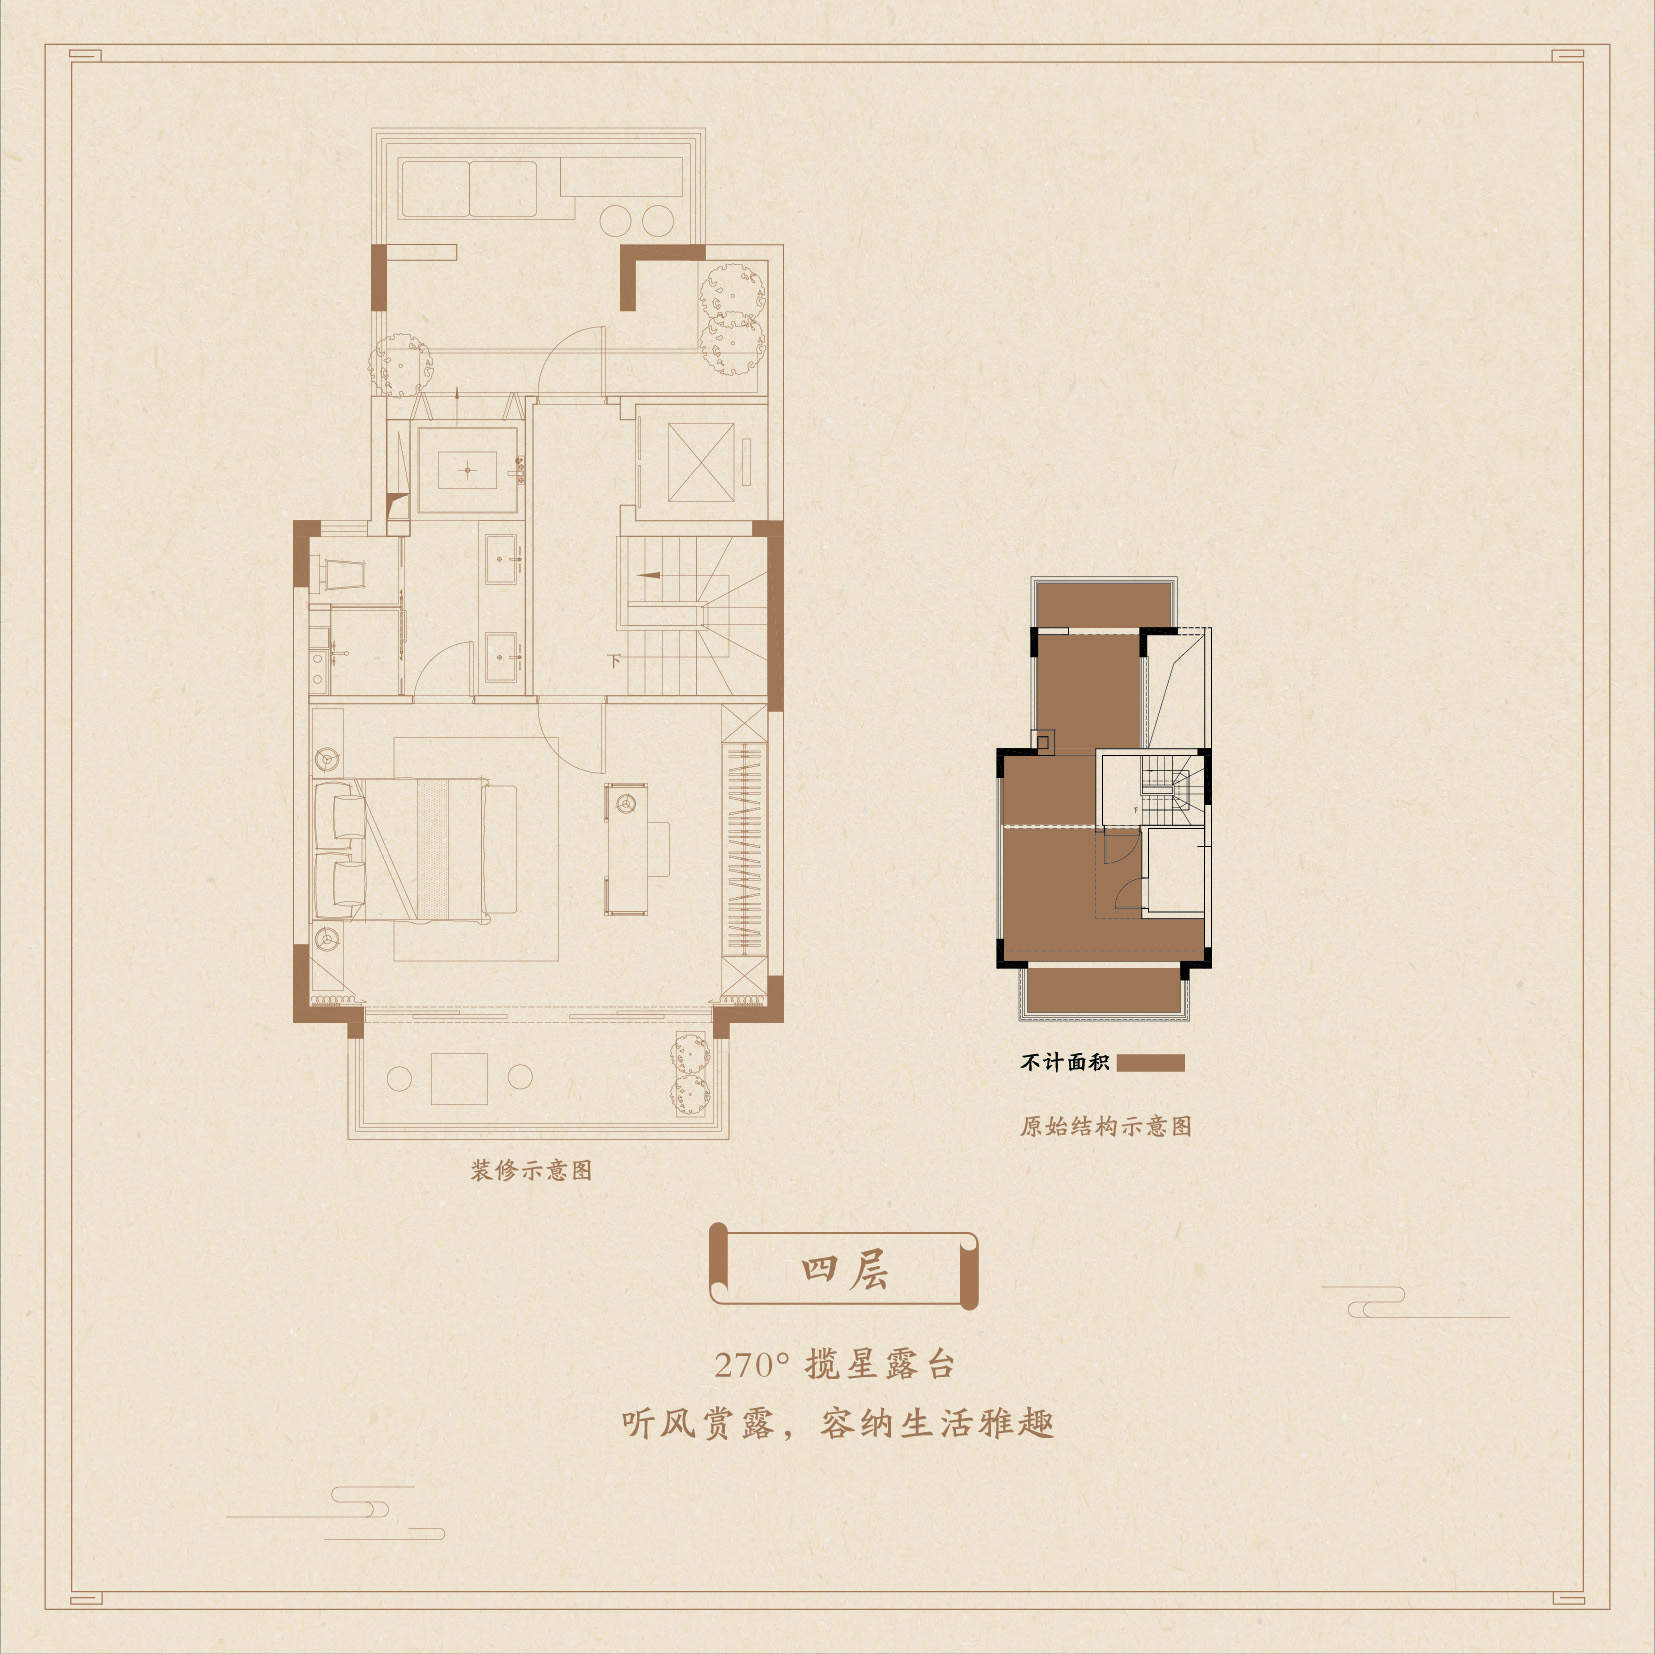 别墅143㎡户型4层